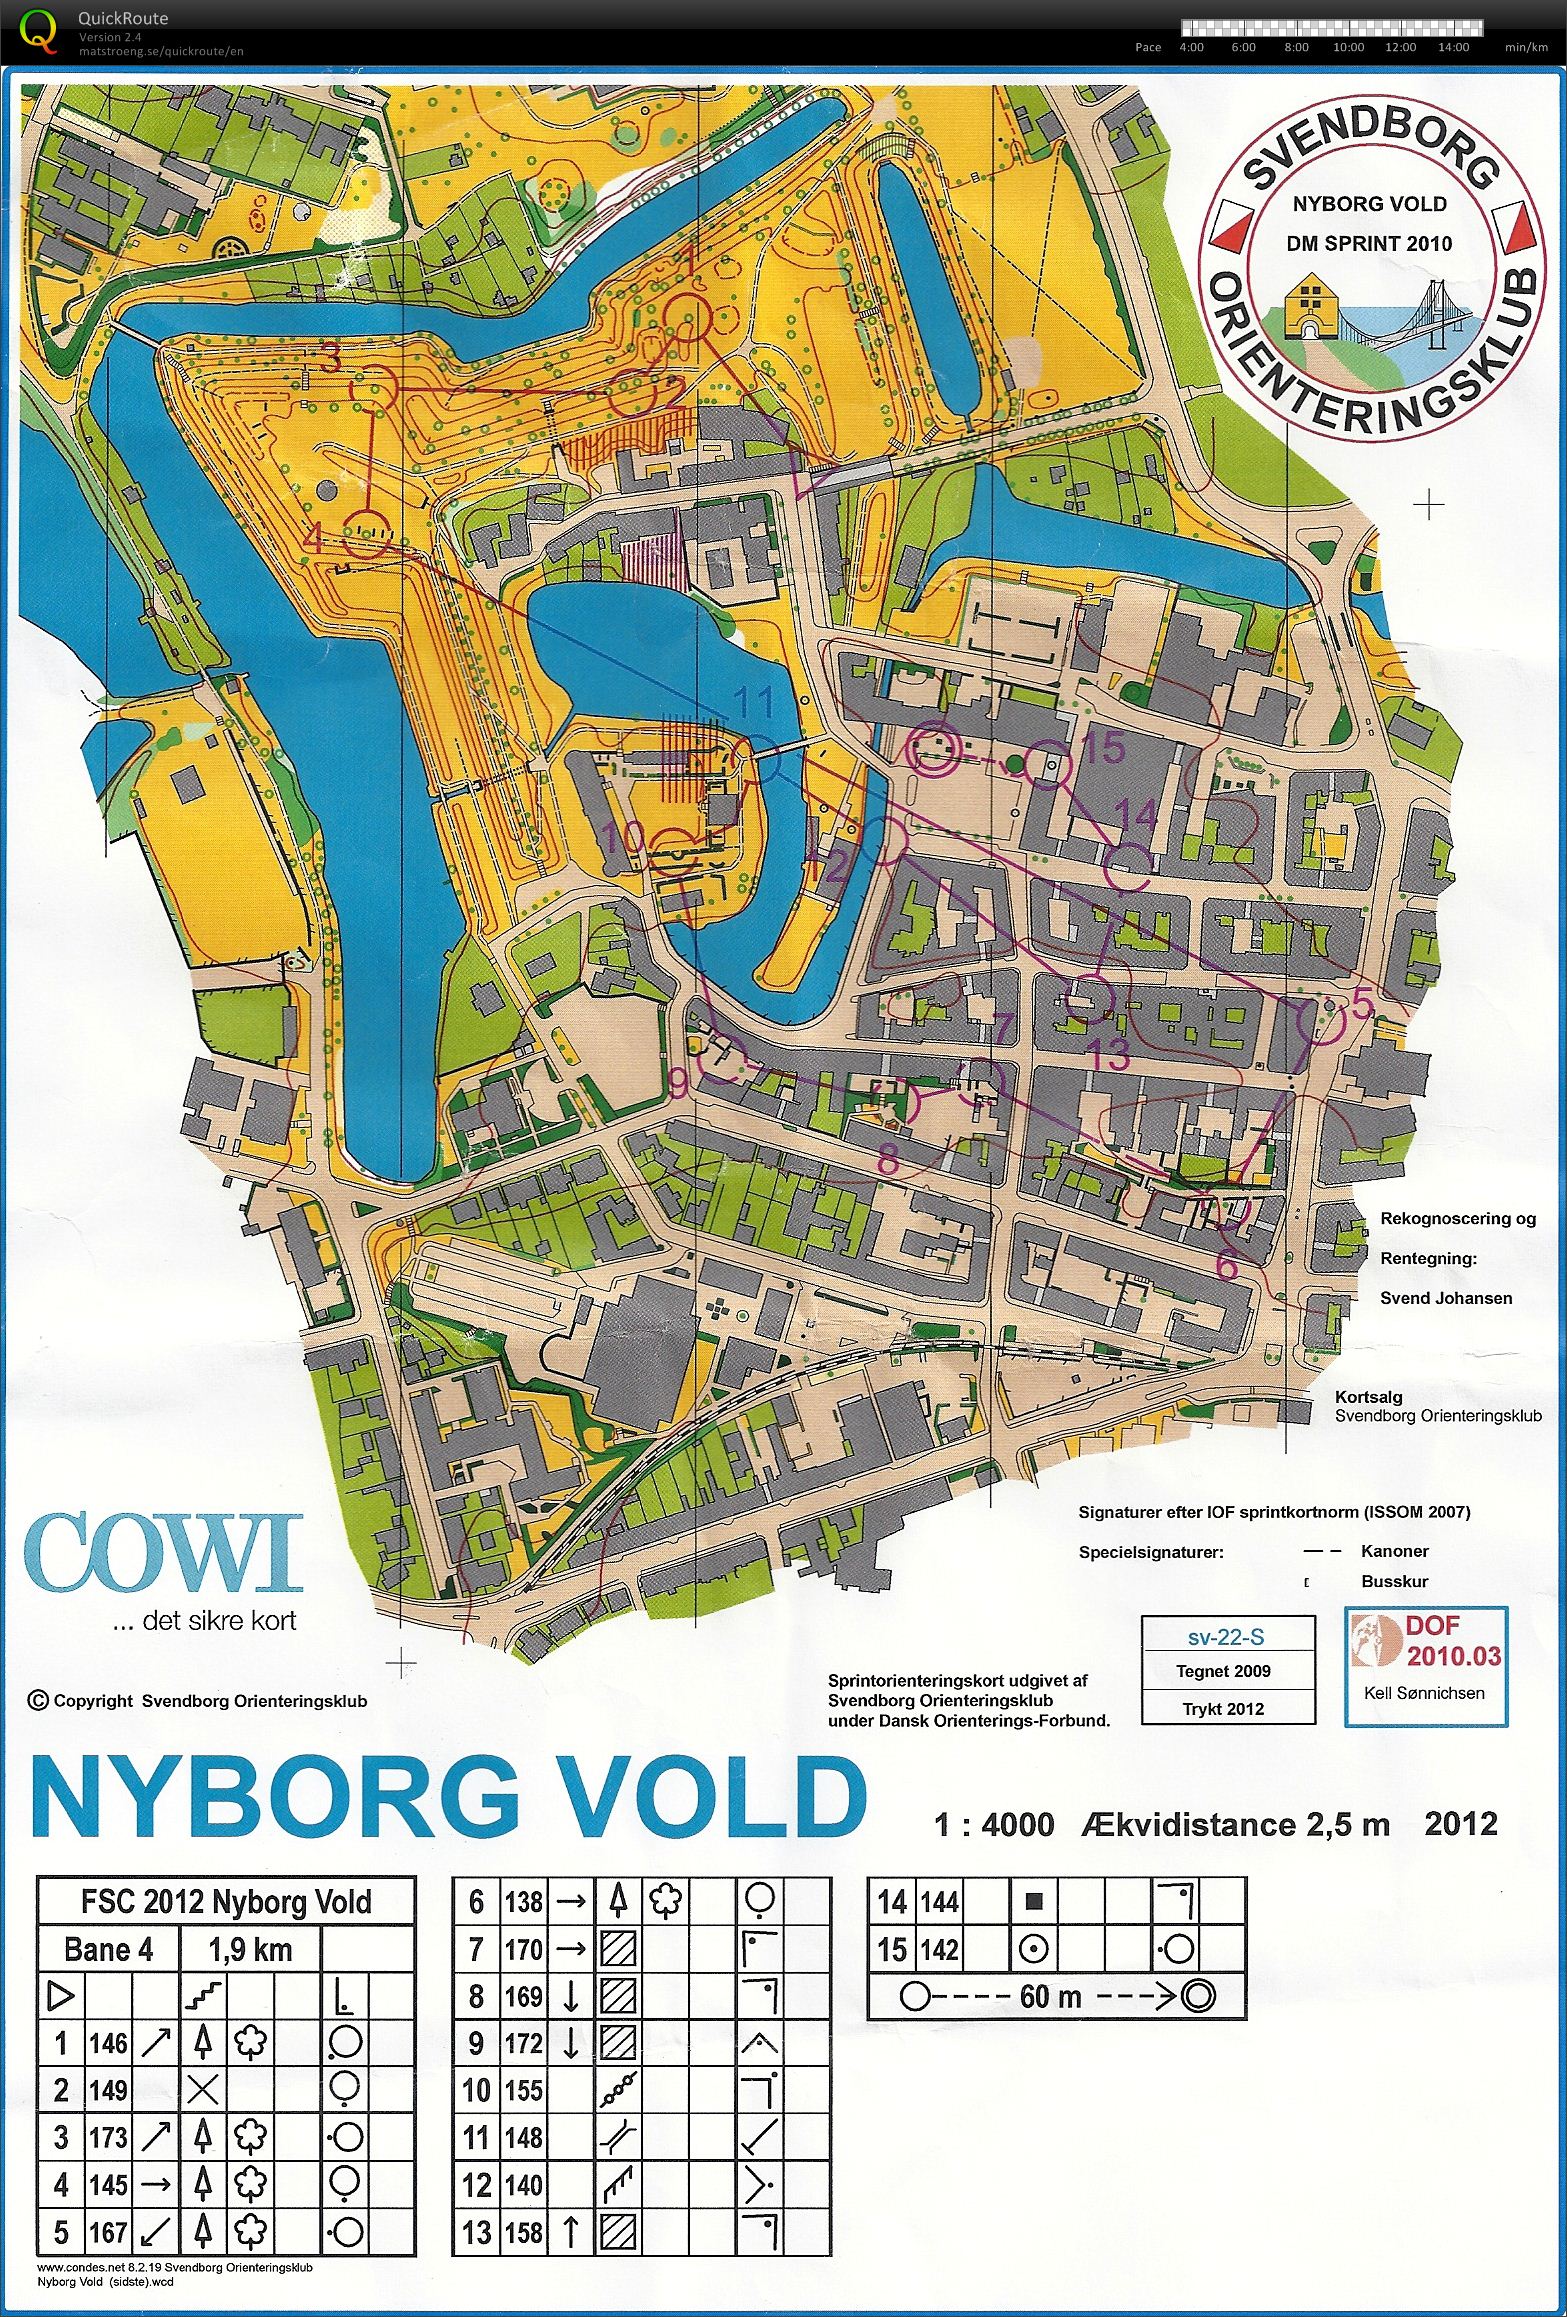 Nyborg Vold, Bane 4, D45, Lene S.N. (28/05/2012)